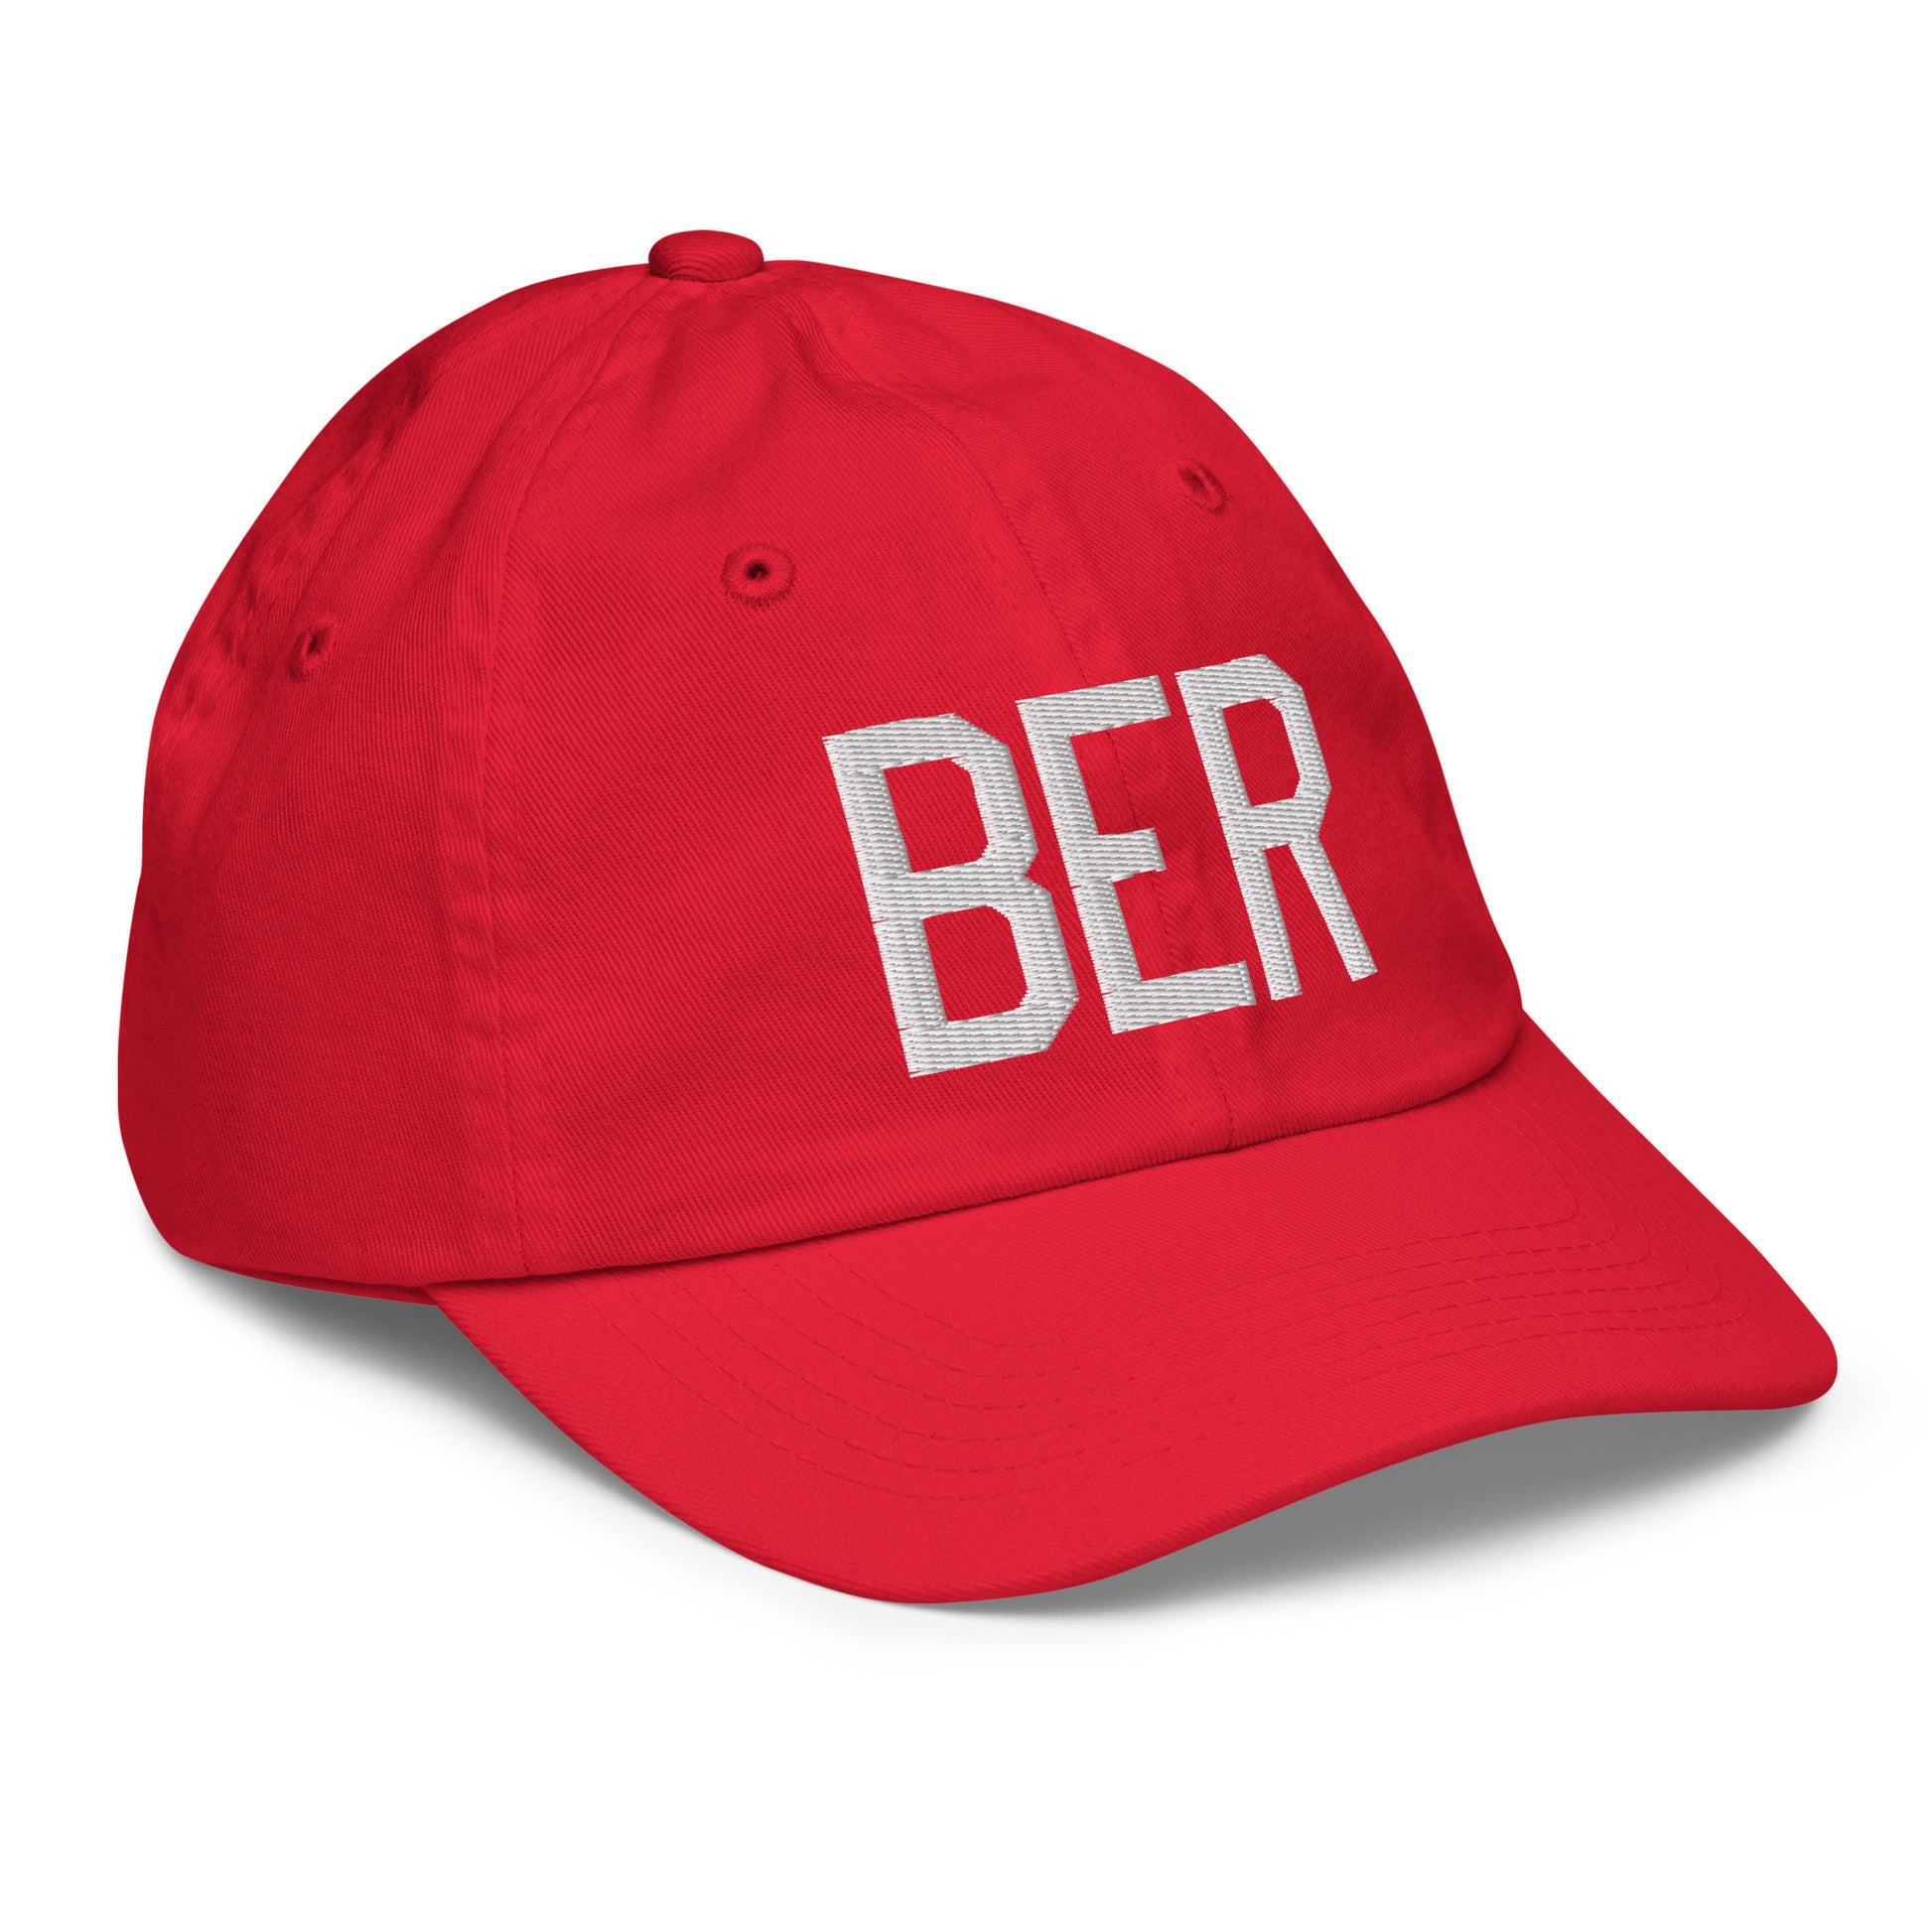 Airport Code Kid's Baseball Cap - White • BER Berlin • YHM Designs - Image 18